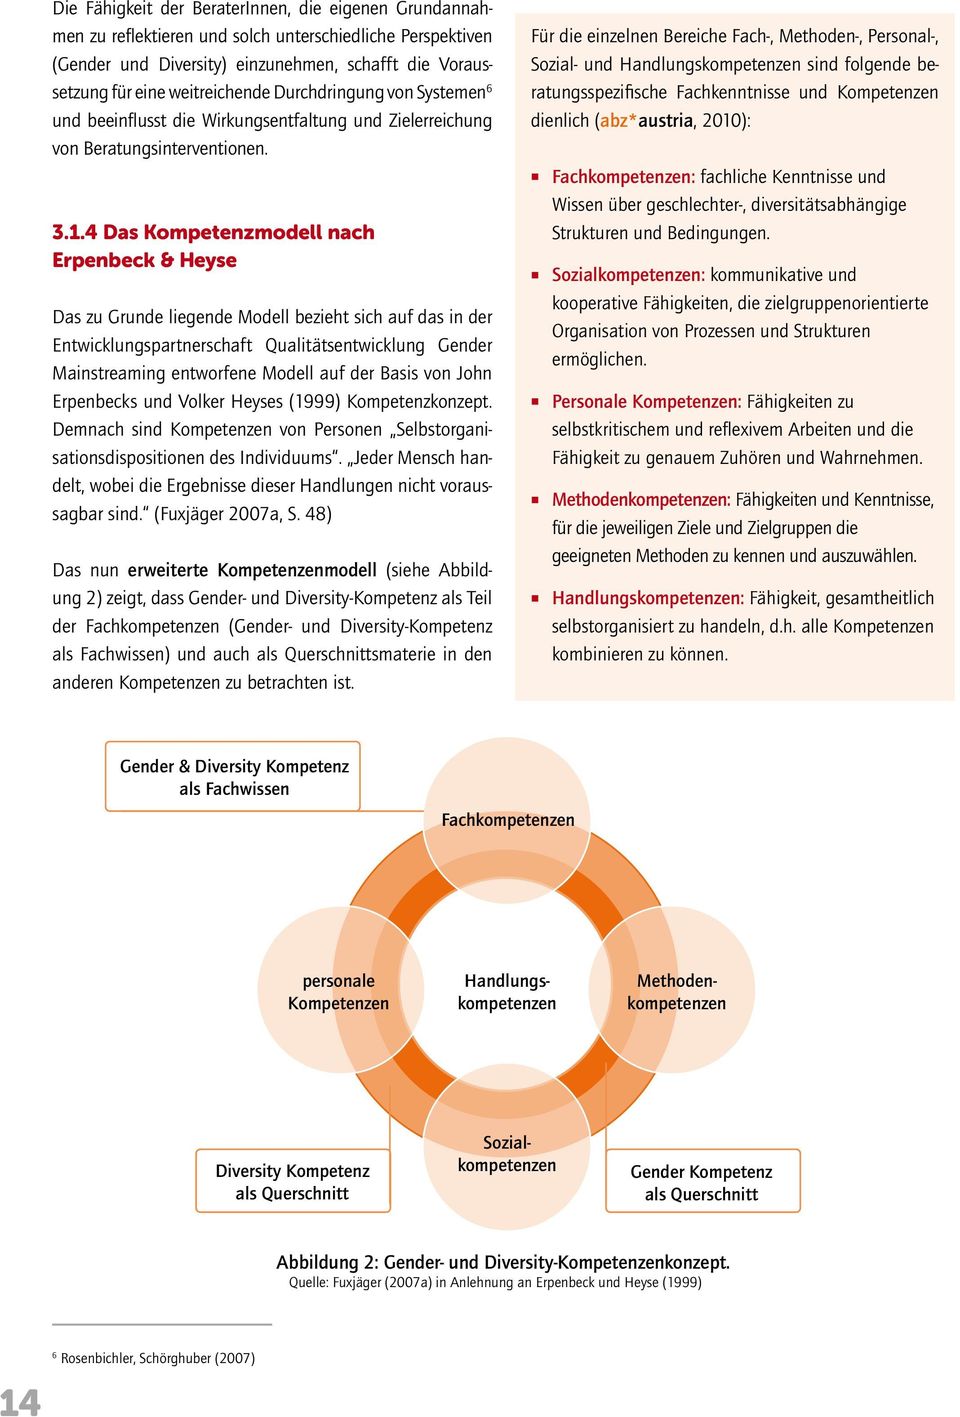 4 Das Kompetenzmodell nach Erpenbeck & Heyse Das zu Grunde liegende Modell bezieht sich auf das in der Entwicklungspartnerschaft Qualitätsentwicklung Gender Mainstreaming entworfene Modell auf der